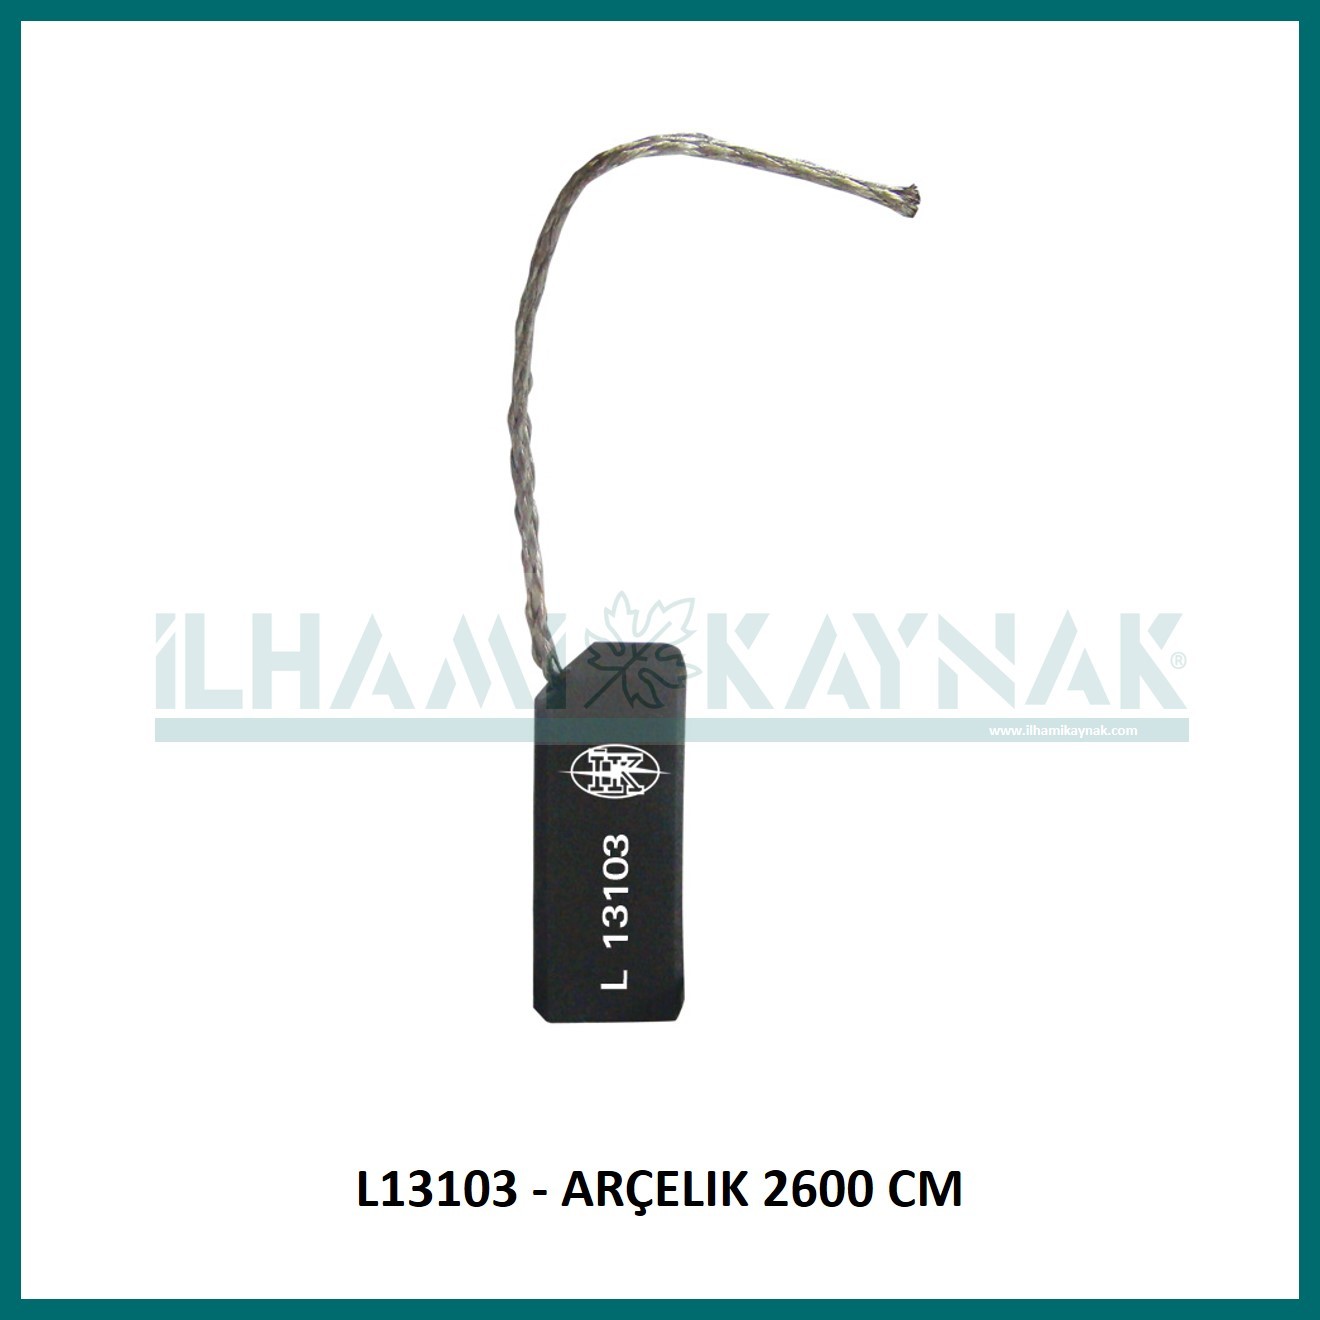 L13103 - ARÇELIK 2600 CM - 5*12,5*34 mm - Minimum Satın Alım: 10 Adet.